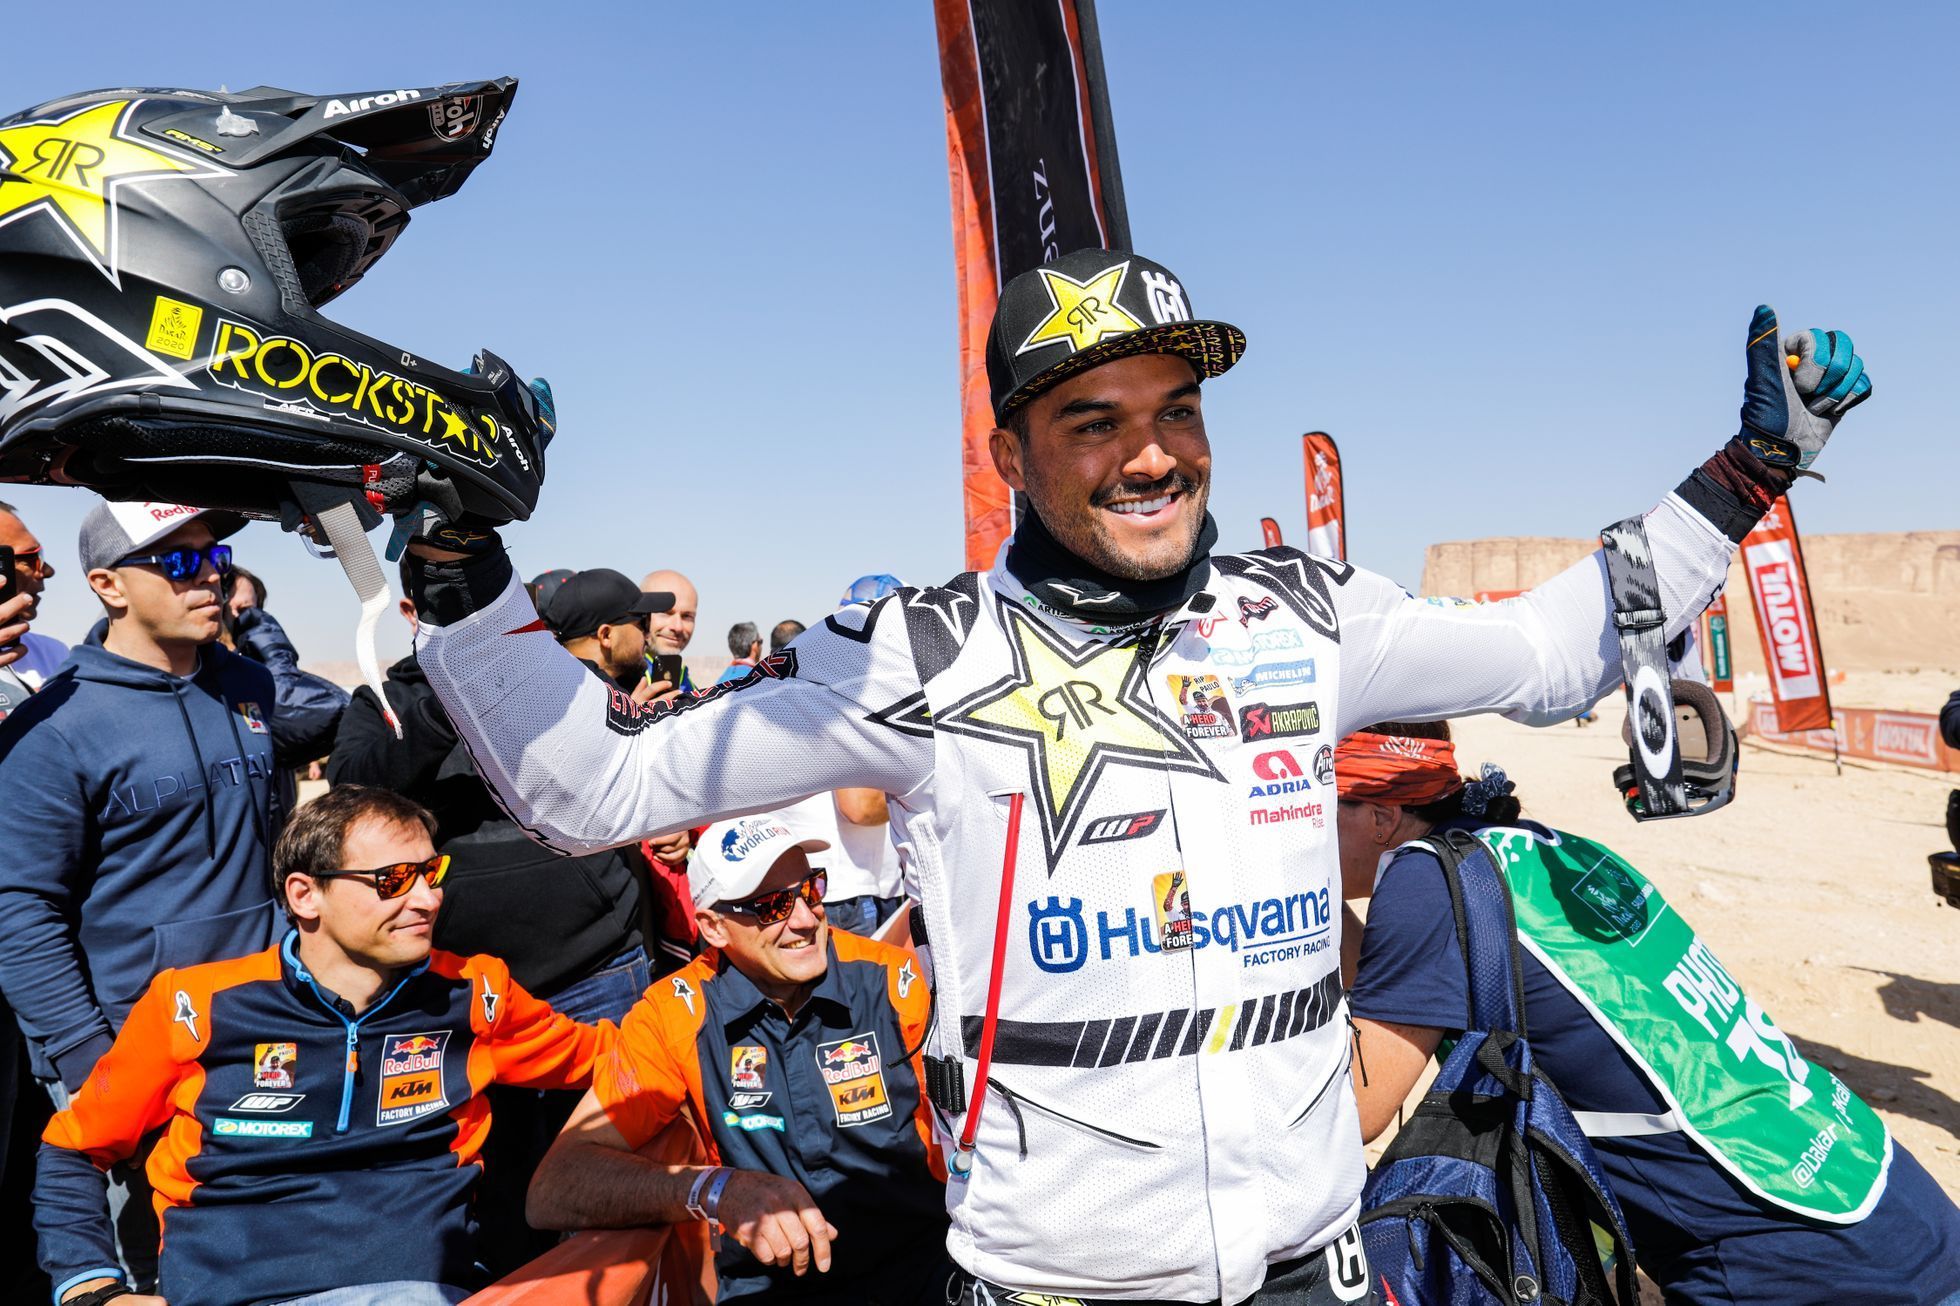 Čtyřkolkář Ignacio Casale slaví vítězství v Rallye Dakar 2020